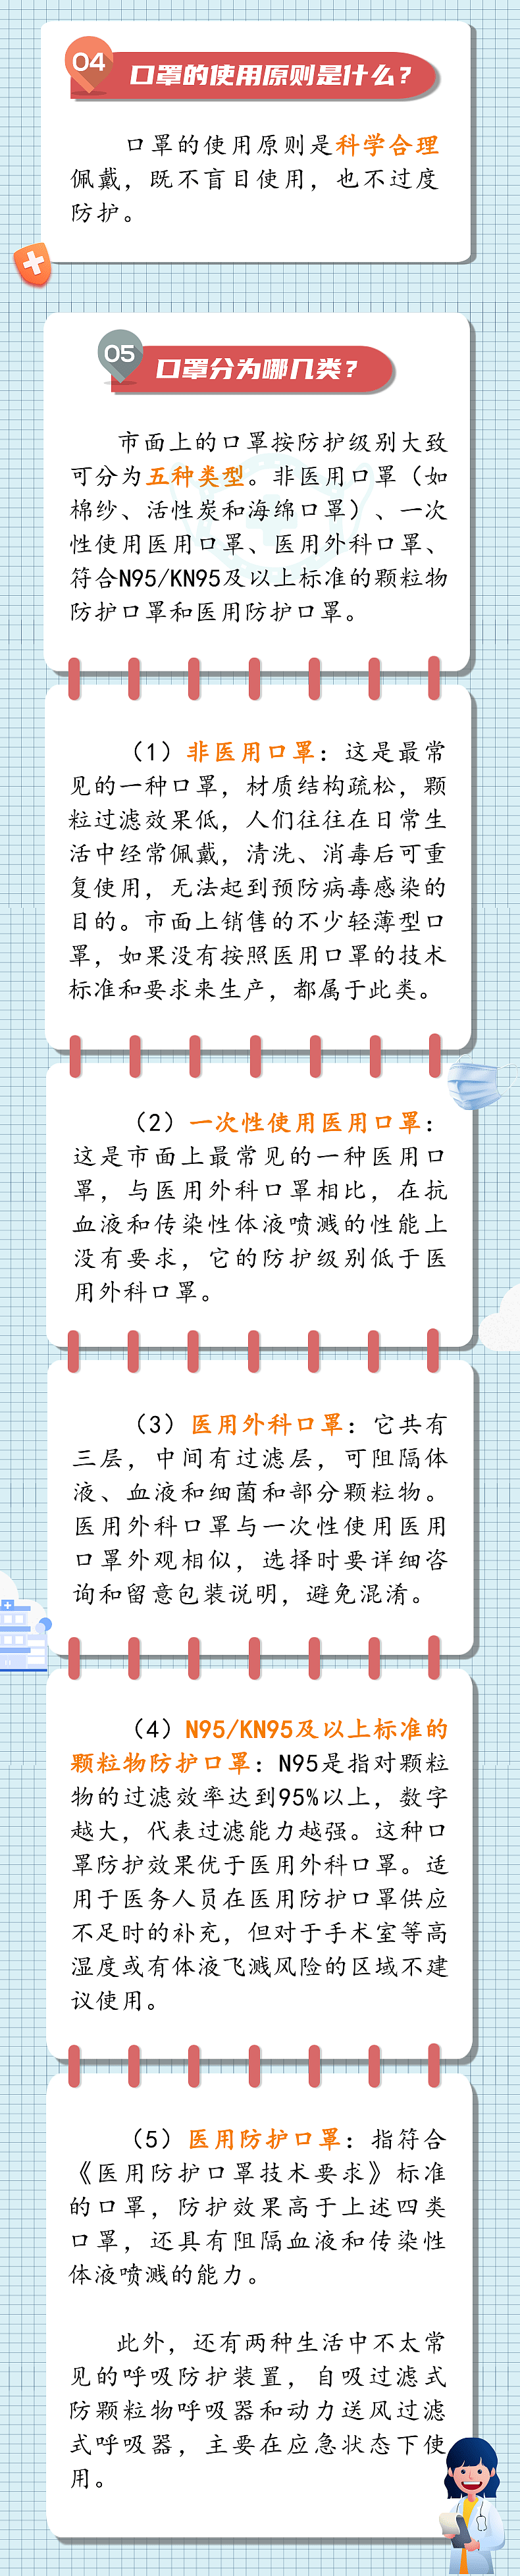 河北省疾病预防控制中心 口罩佩戴21问（一） - 3